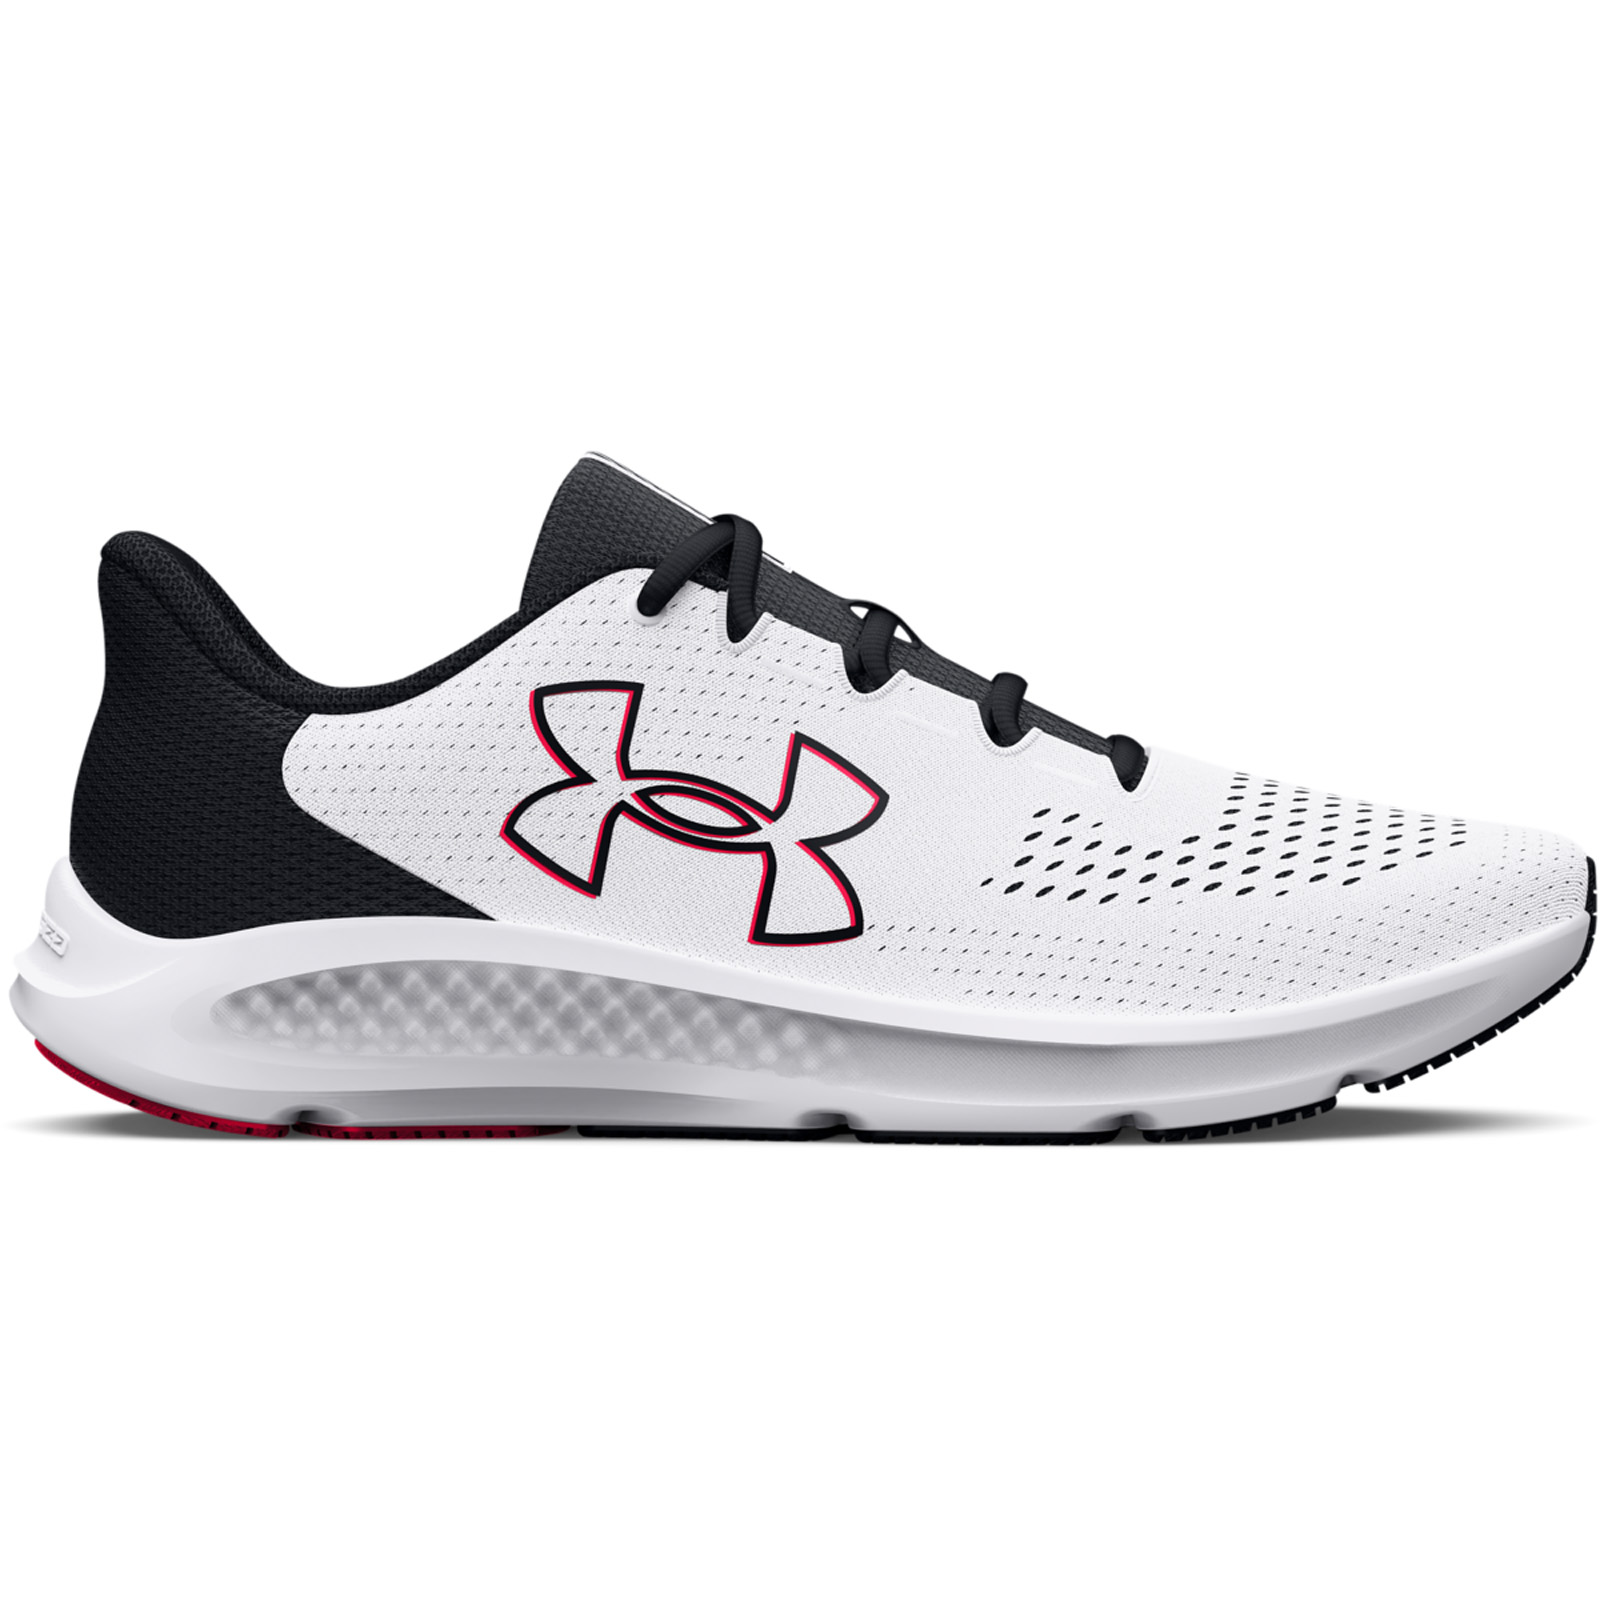 Ανδρικά > Παπούτσια > Αθλητικά > Παπούτσι Low Cut Under Armour - Men's UA Charged Pursuit 3 Big Logo Running Shoes - White/Black/Red